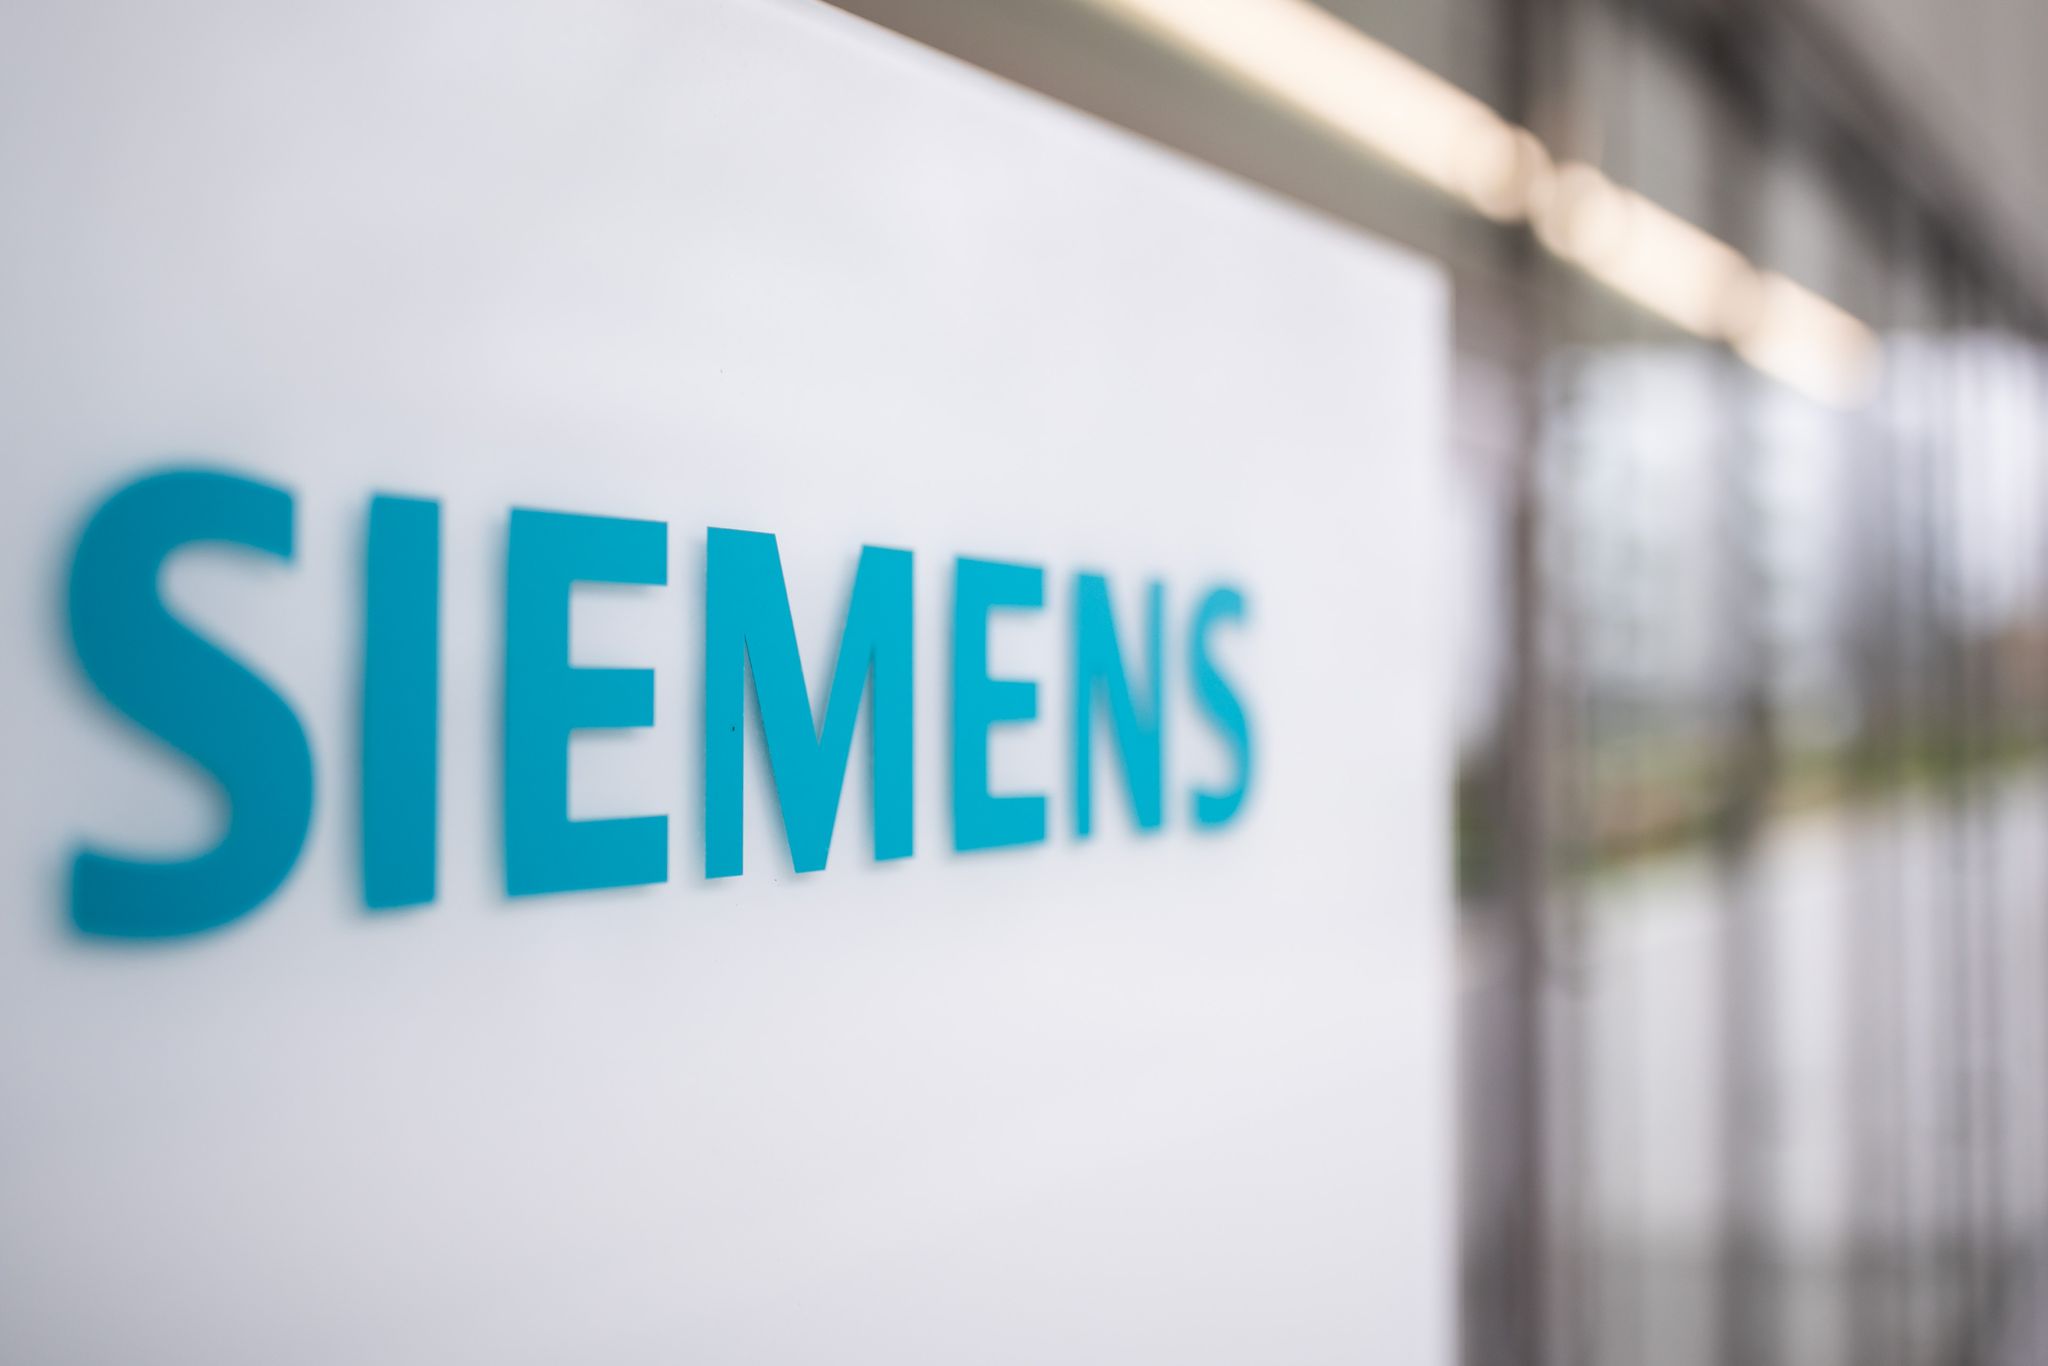 Das Logo des deutschen Industriekonzerns Siemens Energy am Eingang eines Bürogebäudes.